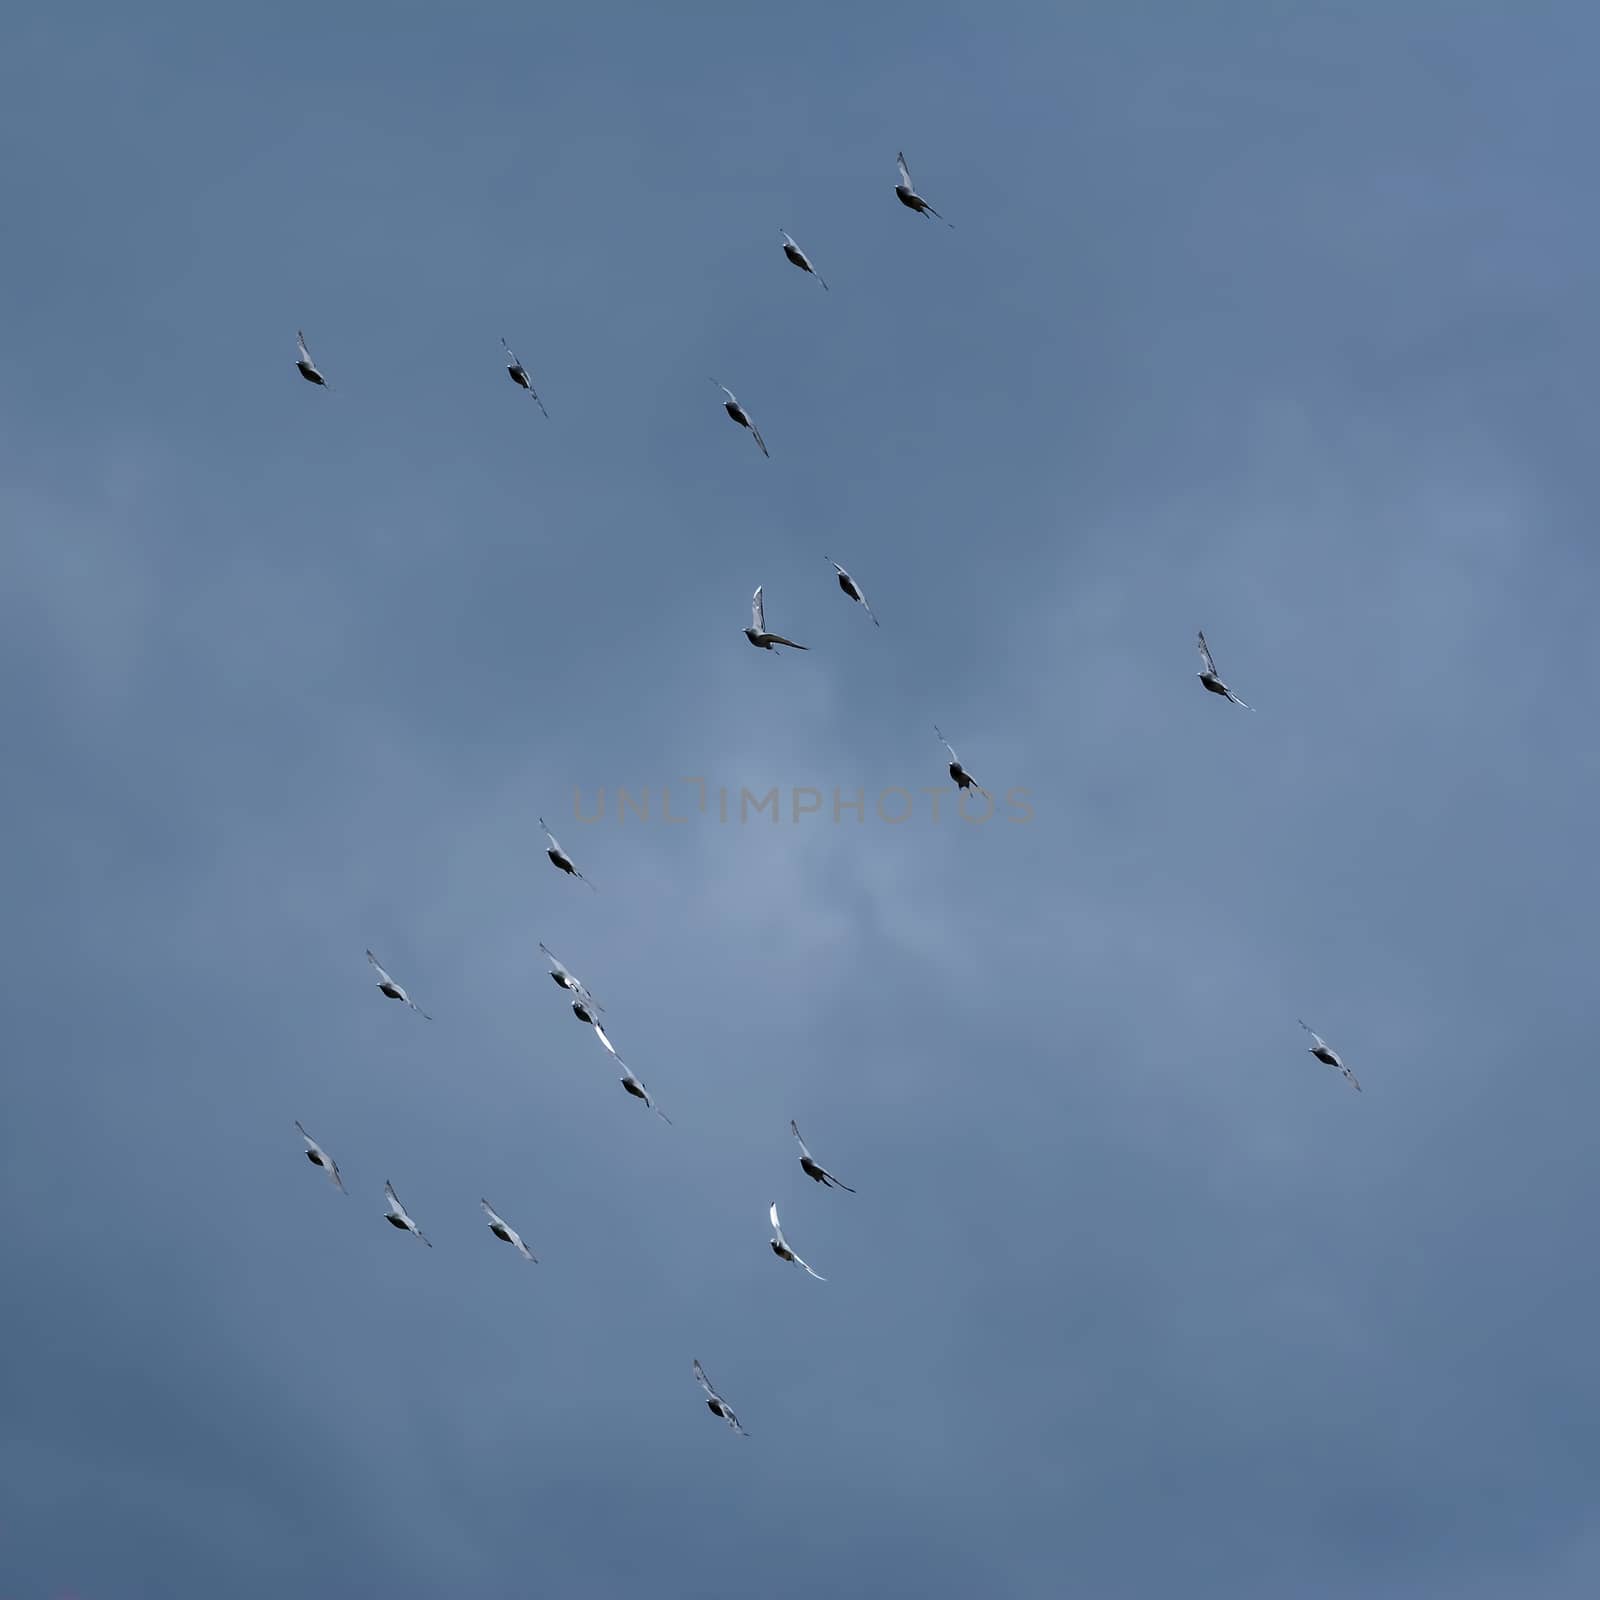 Doves in the Sky by SNR